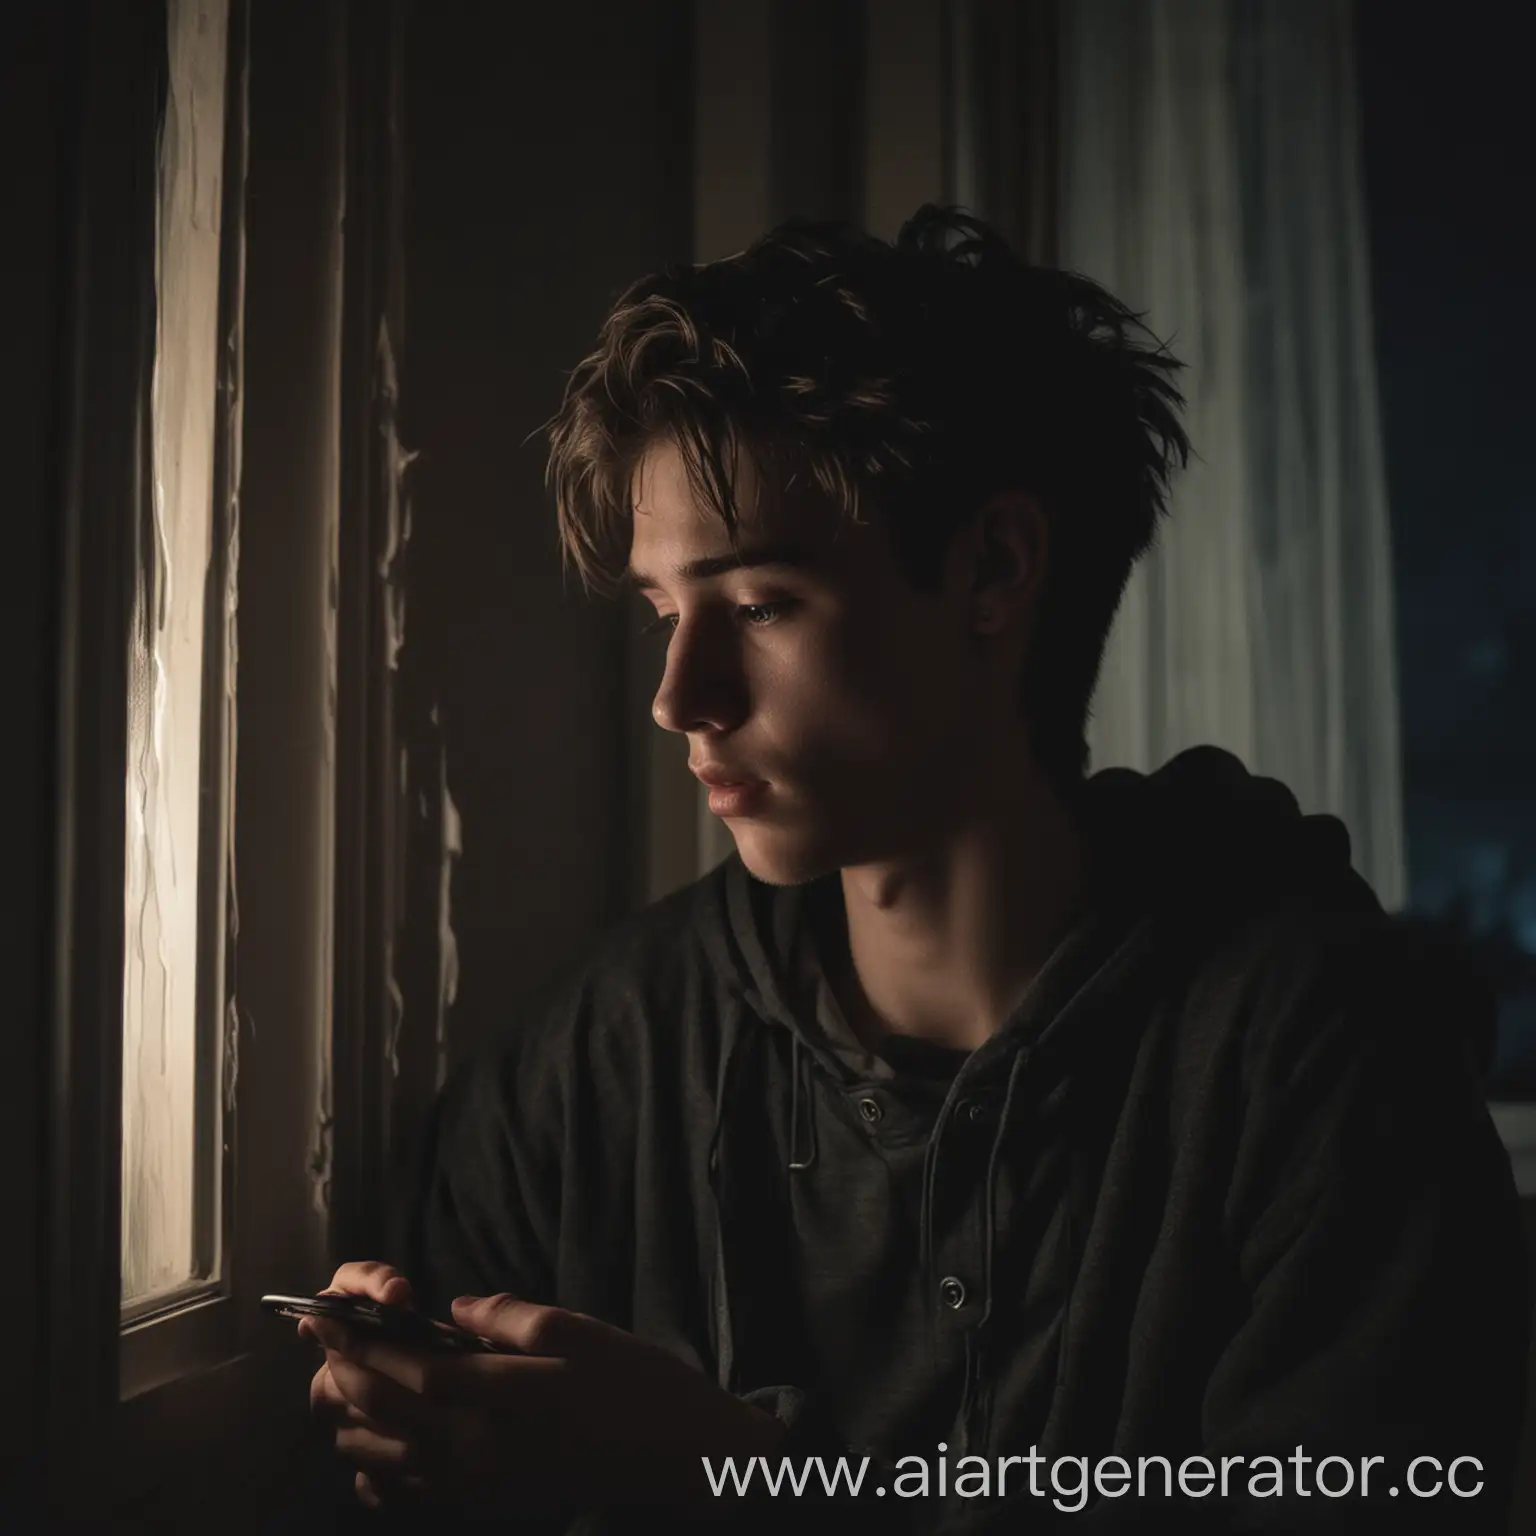 подросток сидит у окна в тёмной комнате по щеке стекают чёрные слёзы, рядом телефон с музыкой. на улице ночь и видно небо